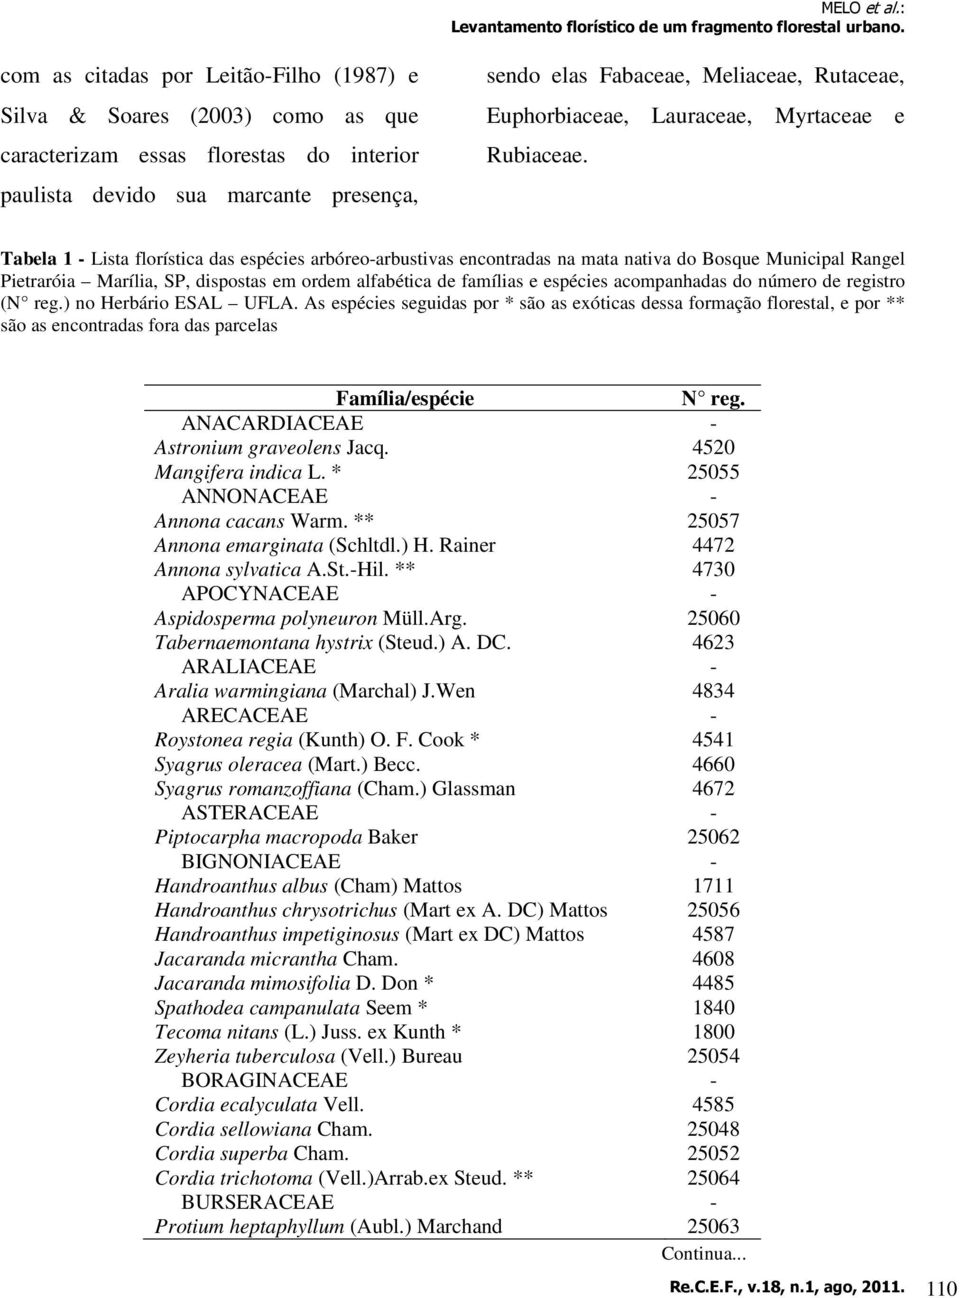 Tabela 1 - Lista florística das espécies arbóreo-arbustivas encontradas na mata nativa do Bosque Municipal Rangel Pietraróia Marília, SP, dispostas em ordem alfabética de famílias e espécies